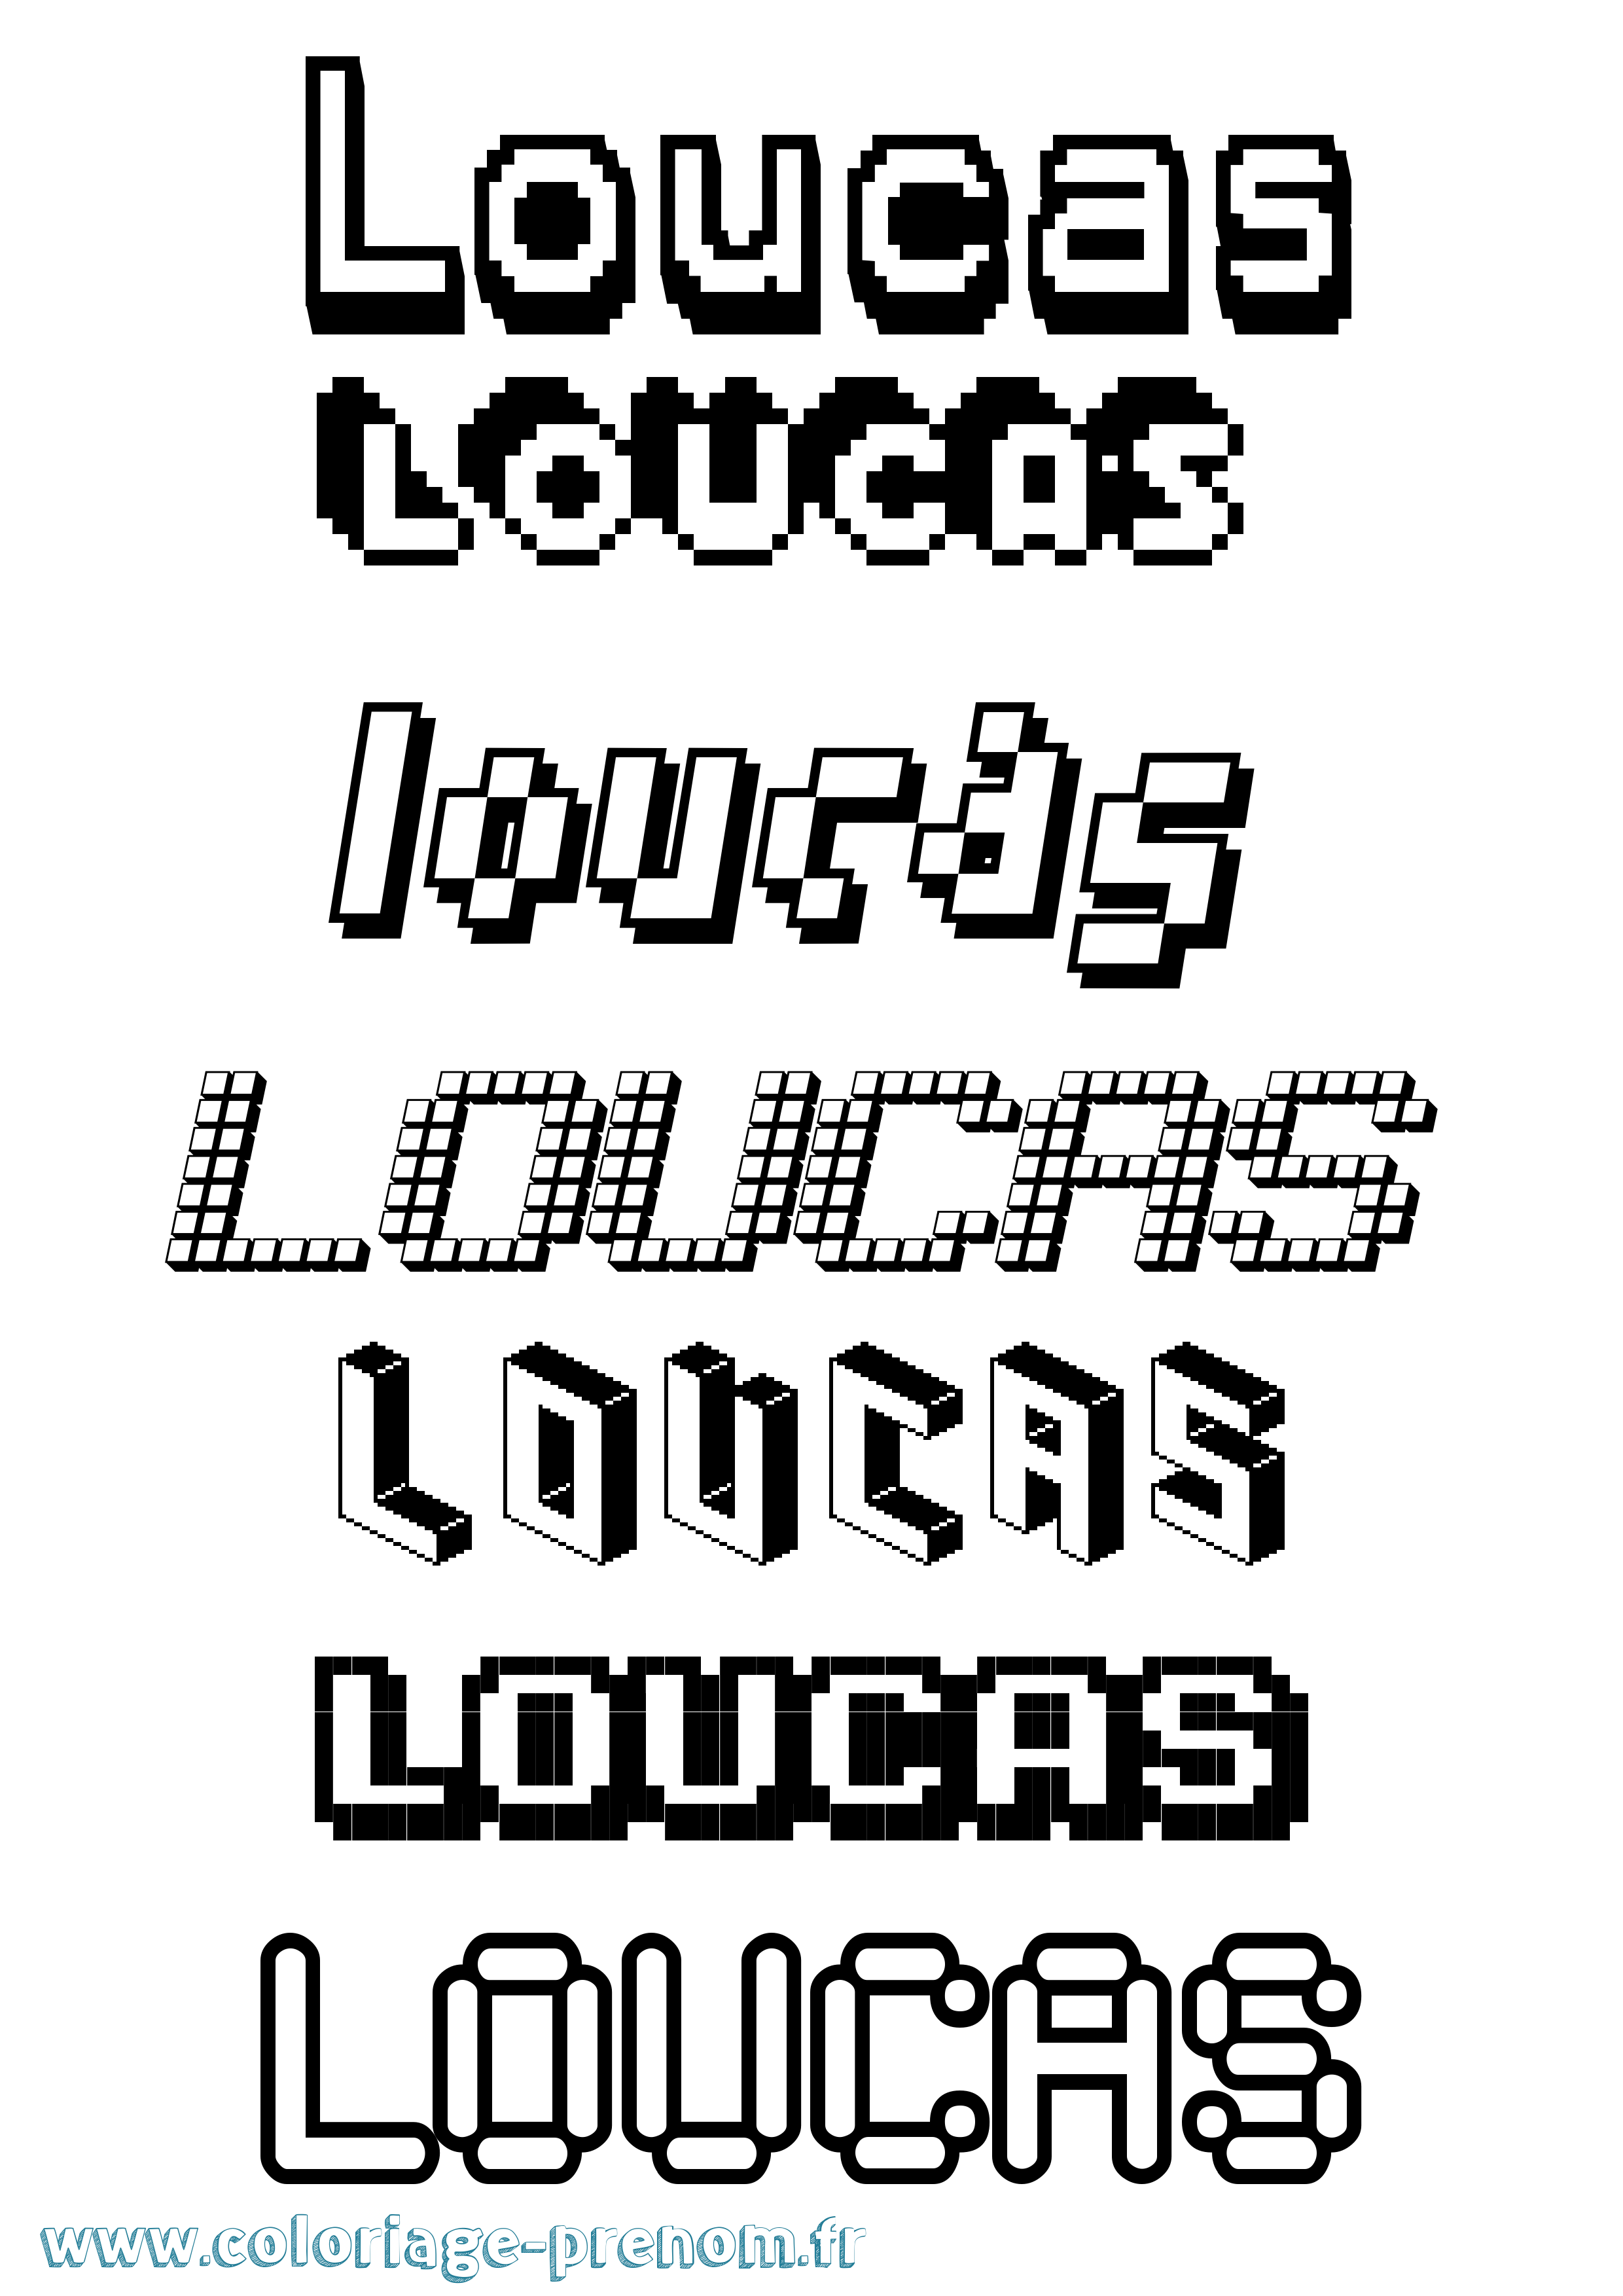 Coloriage prénom Loucas